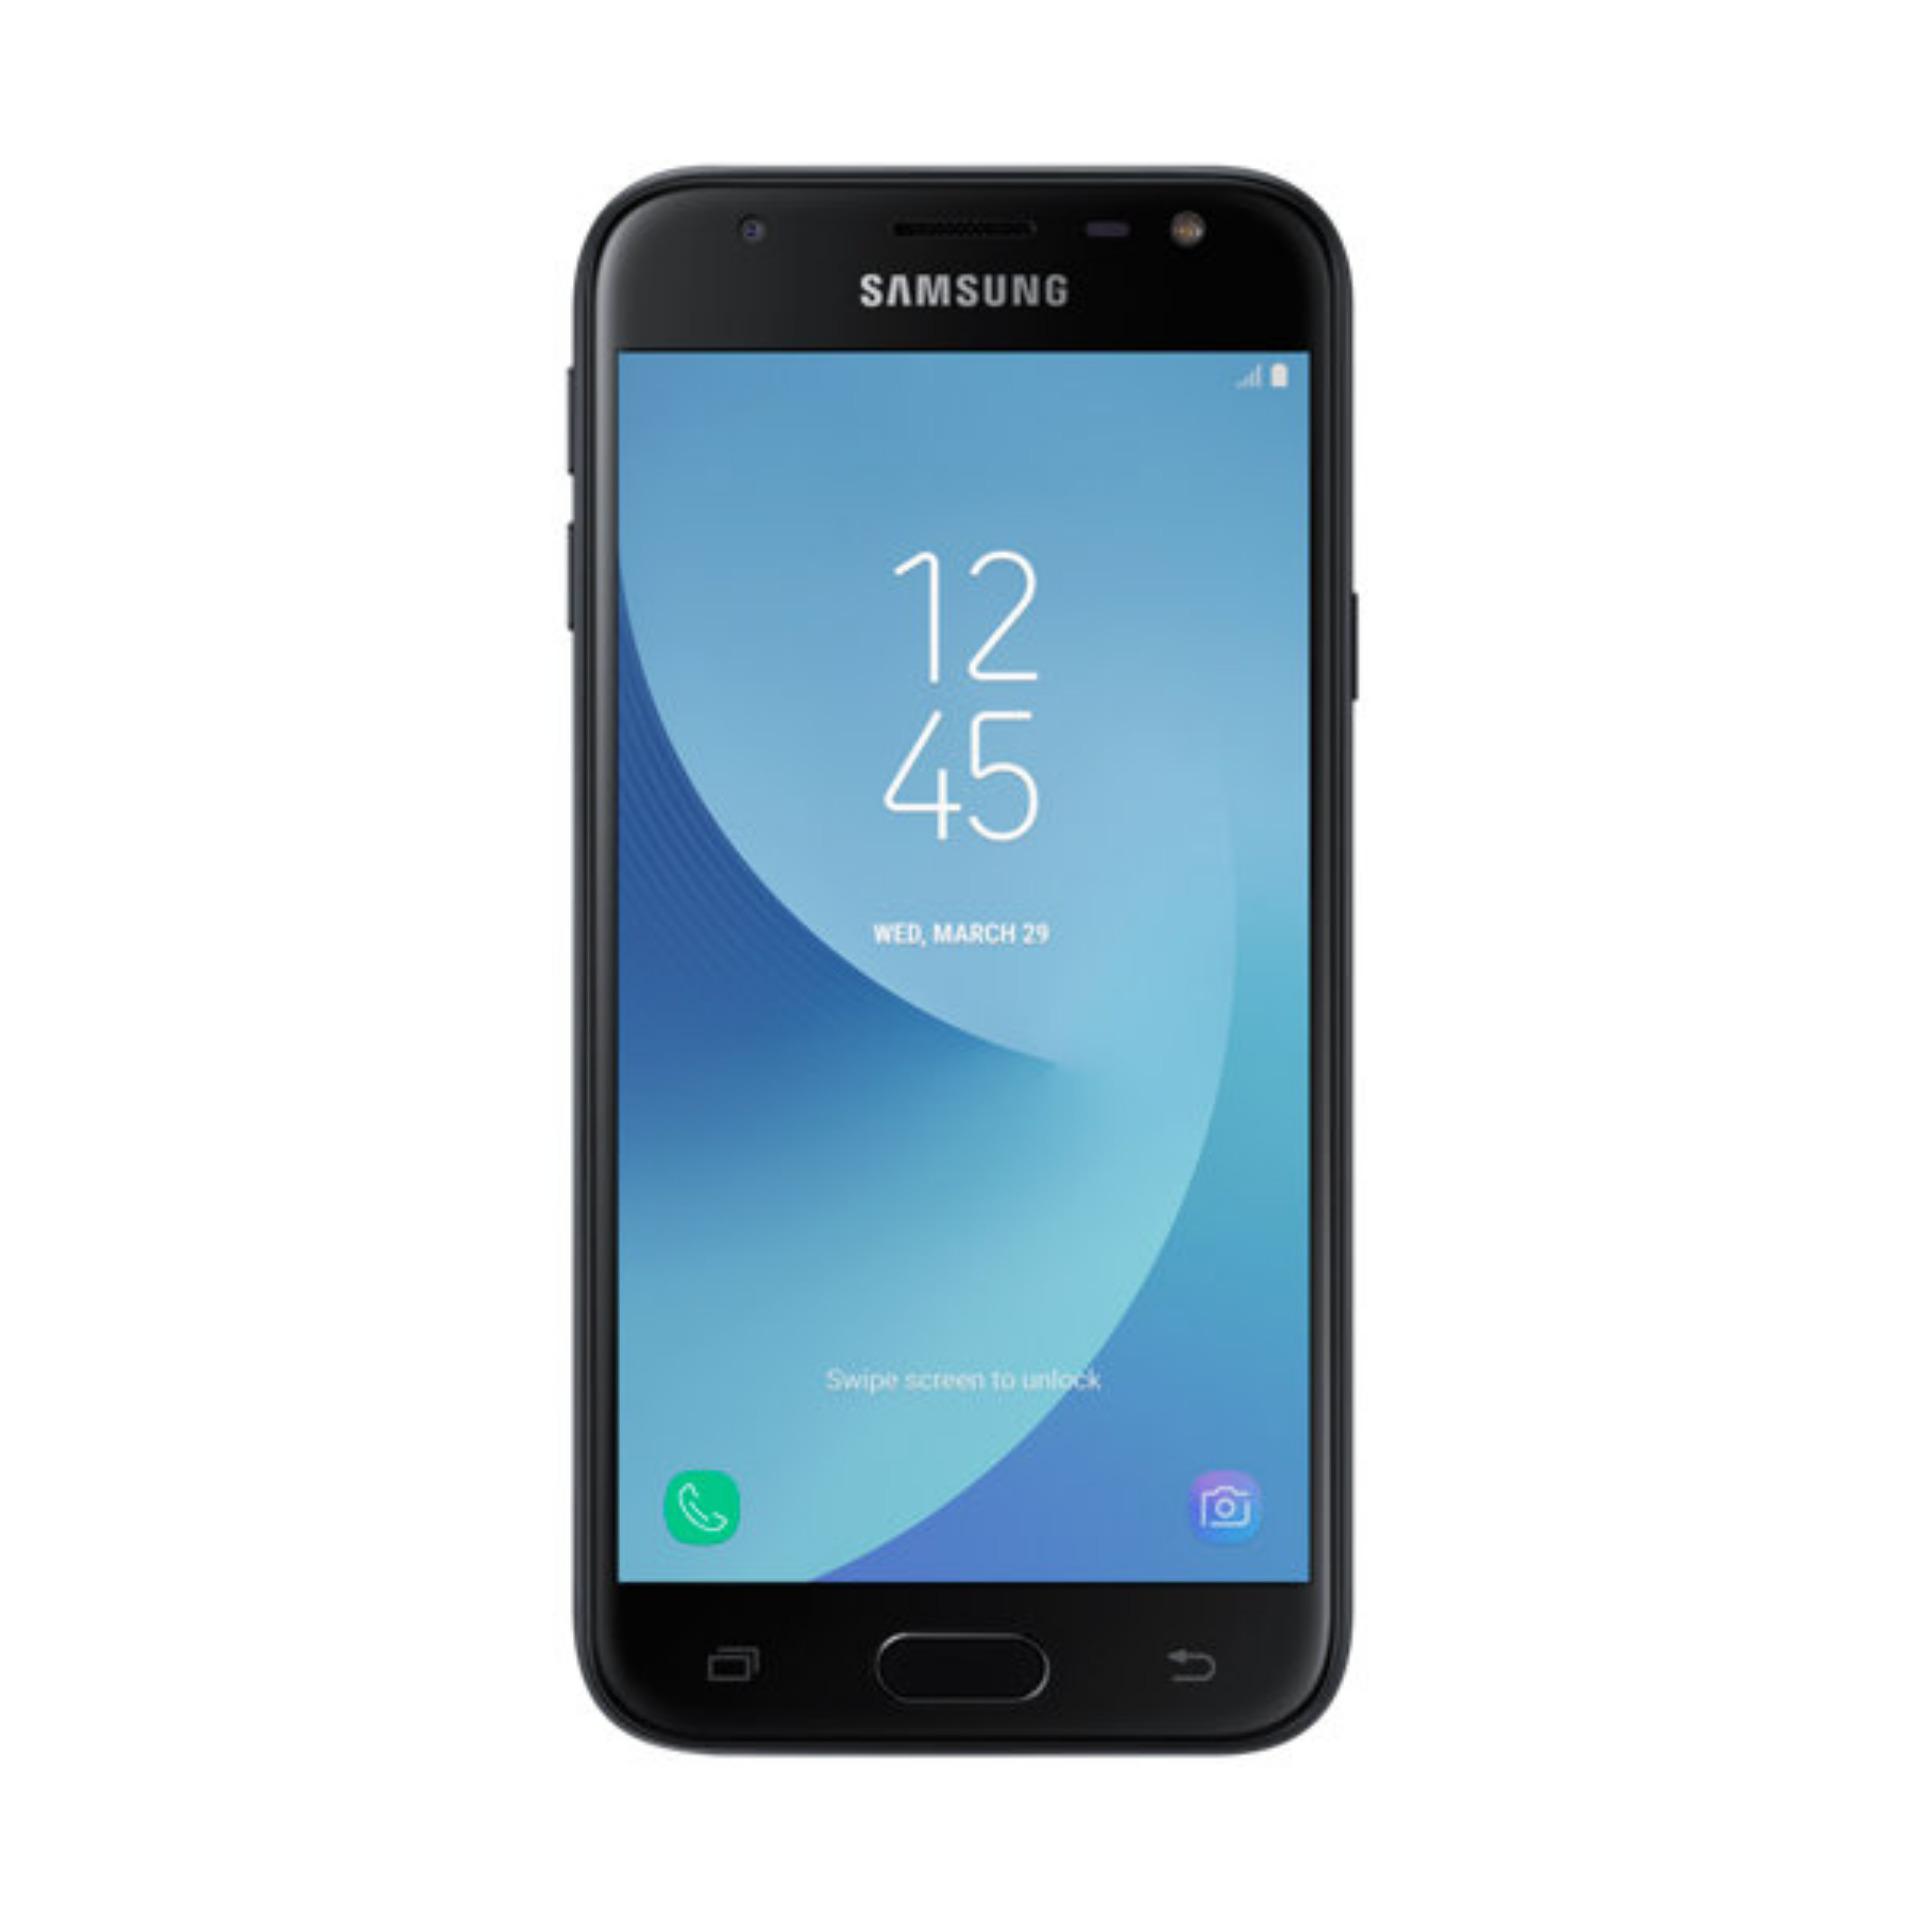 Samsung Galaxy J3 Pro - J330 - 2/16 GB - 4G LTE - Black